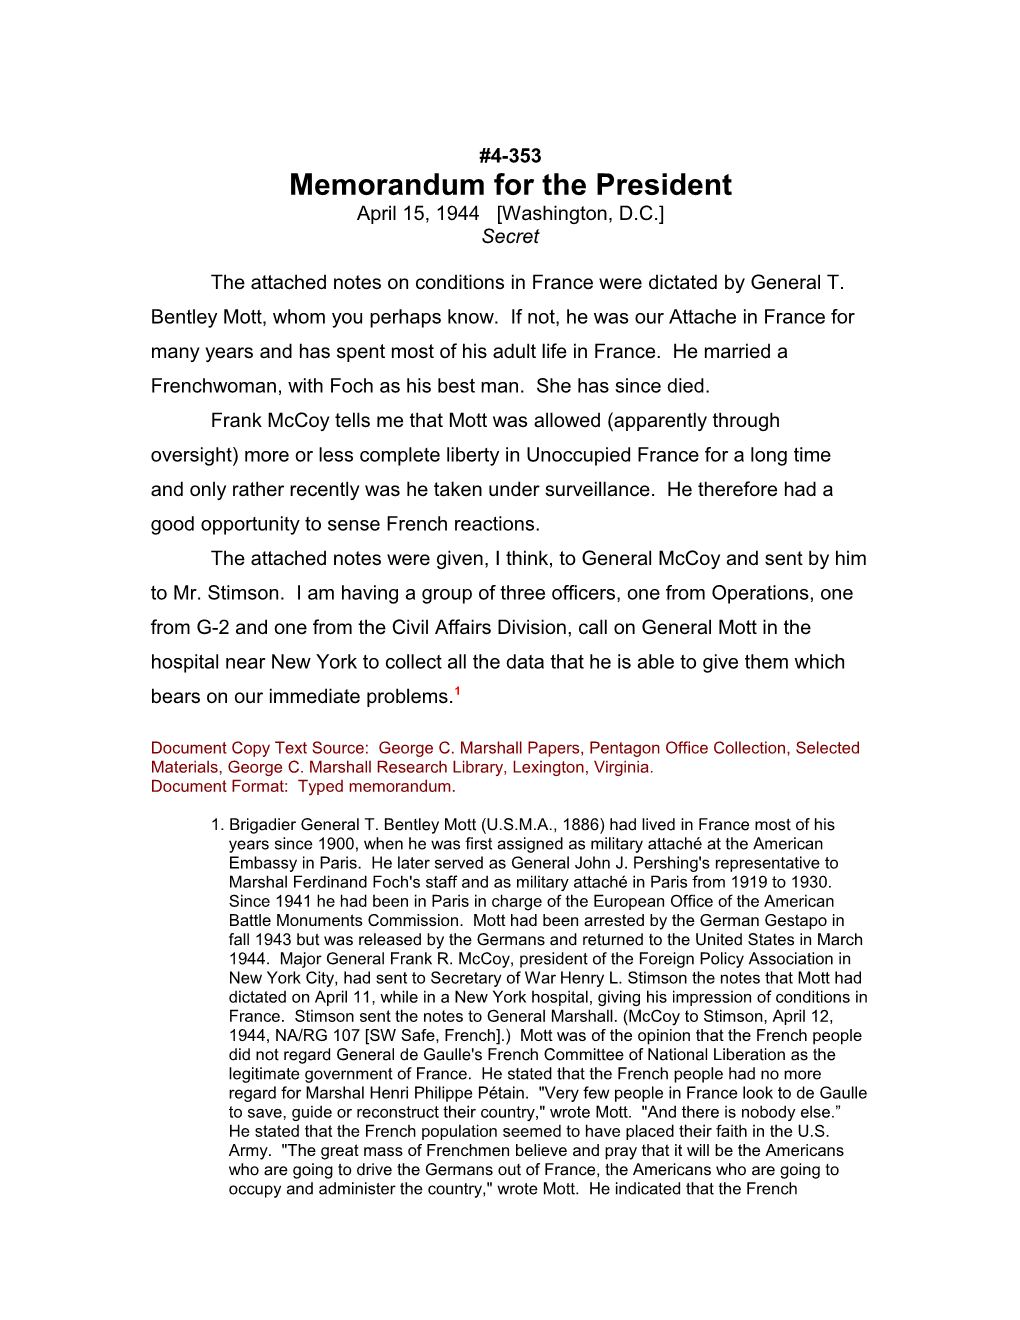 Memorandum for the President s2